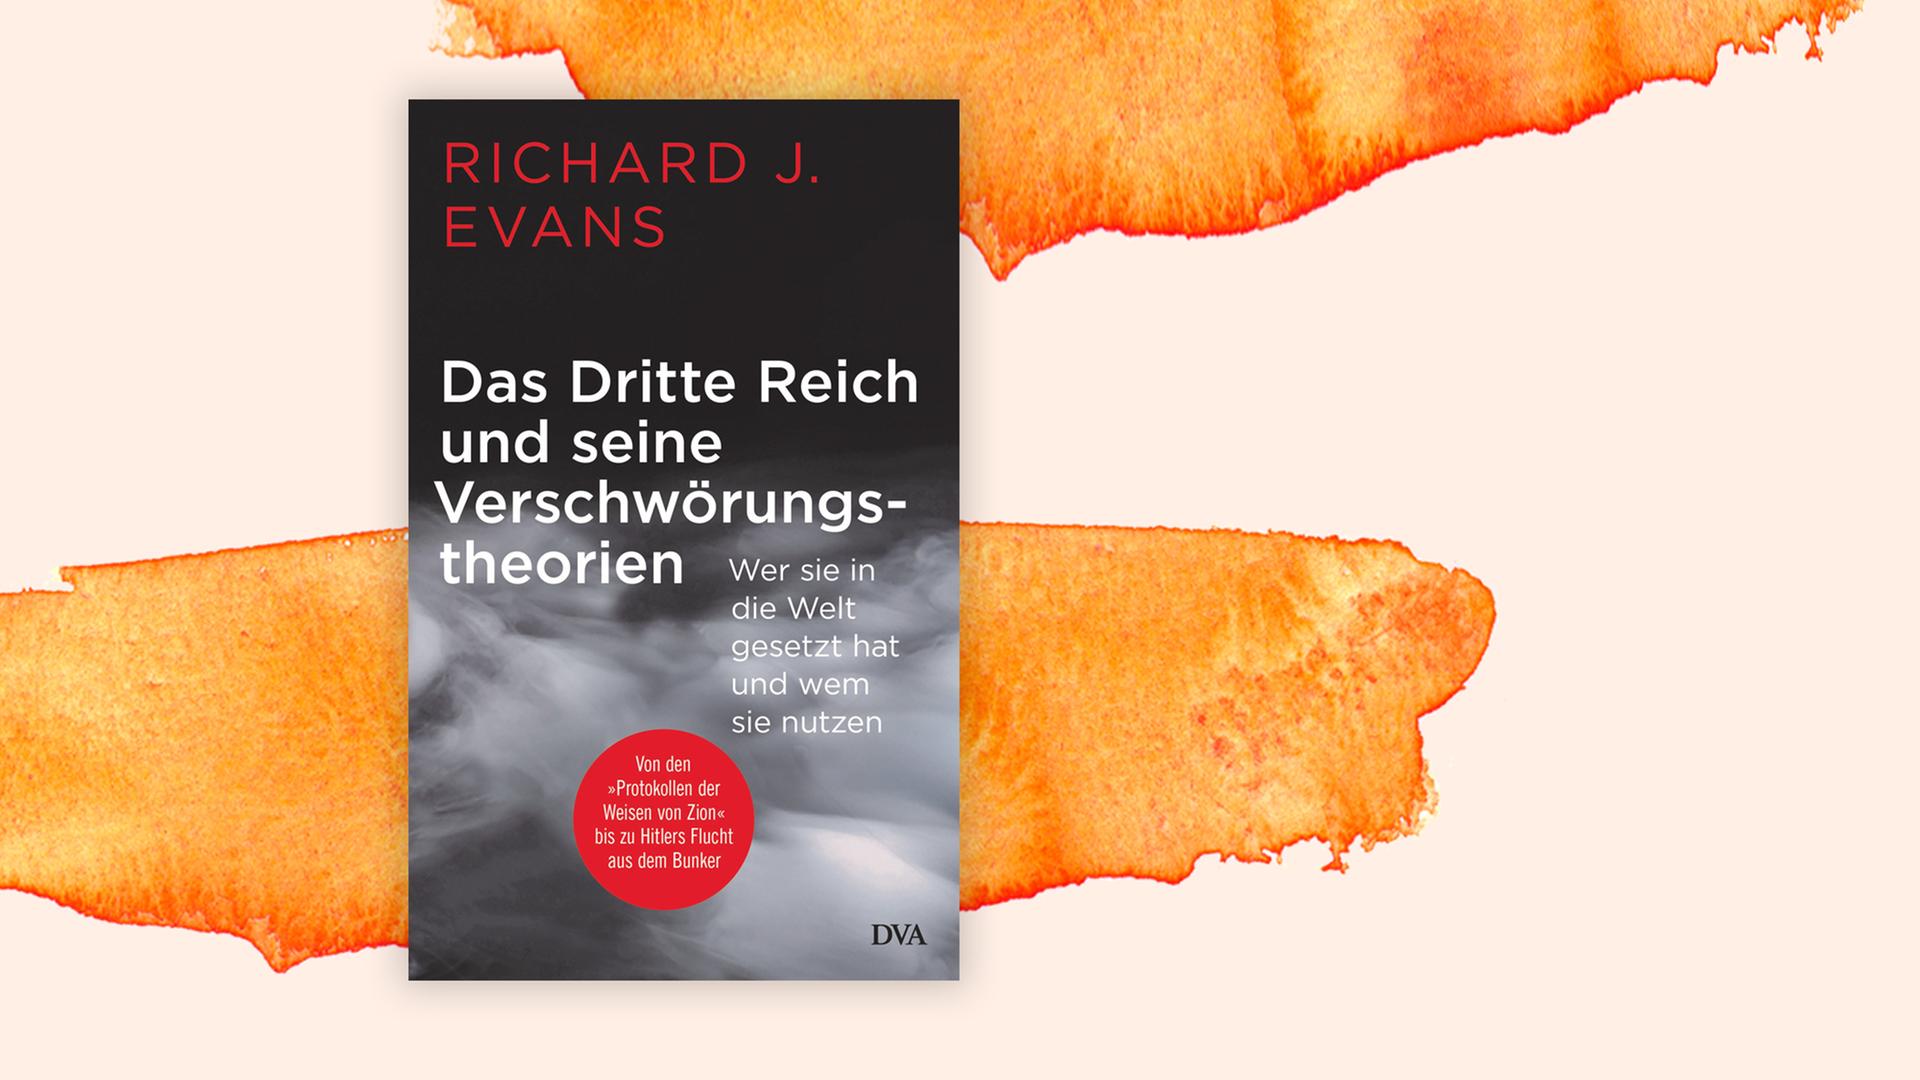 Buchcover: "Das Dritte Reich und seine Verschwörungstheorien" von Richard J. Evans